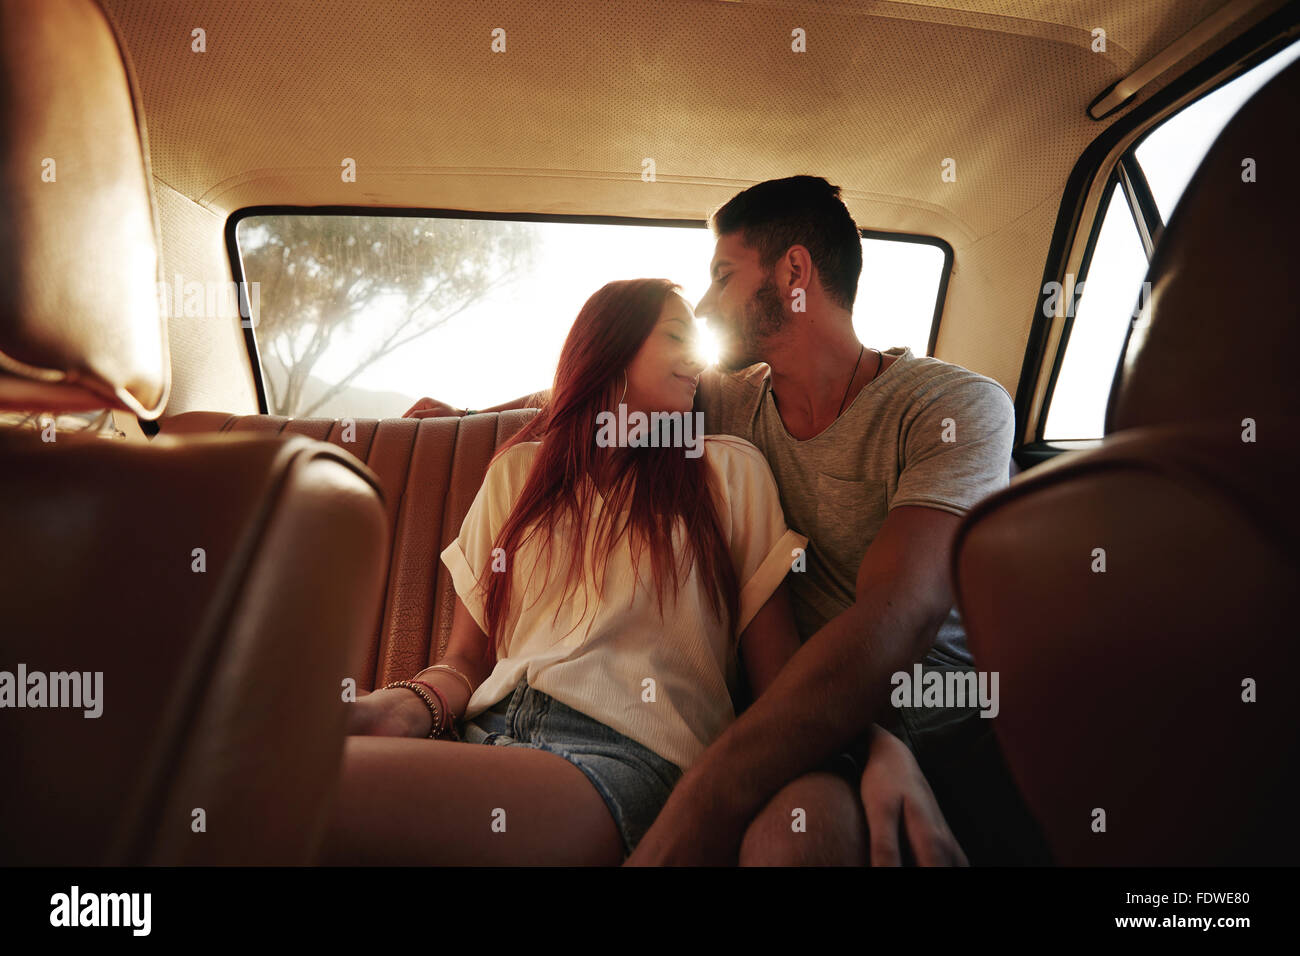 Young couple sitting in siège arrière d'une voiture. Jeune homme et de la femme de banquette arrière d'un véhicule avec sun flare. Banque D'Images